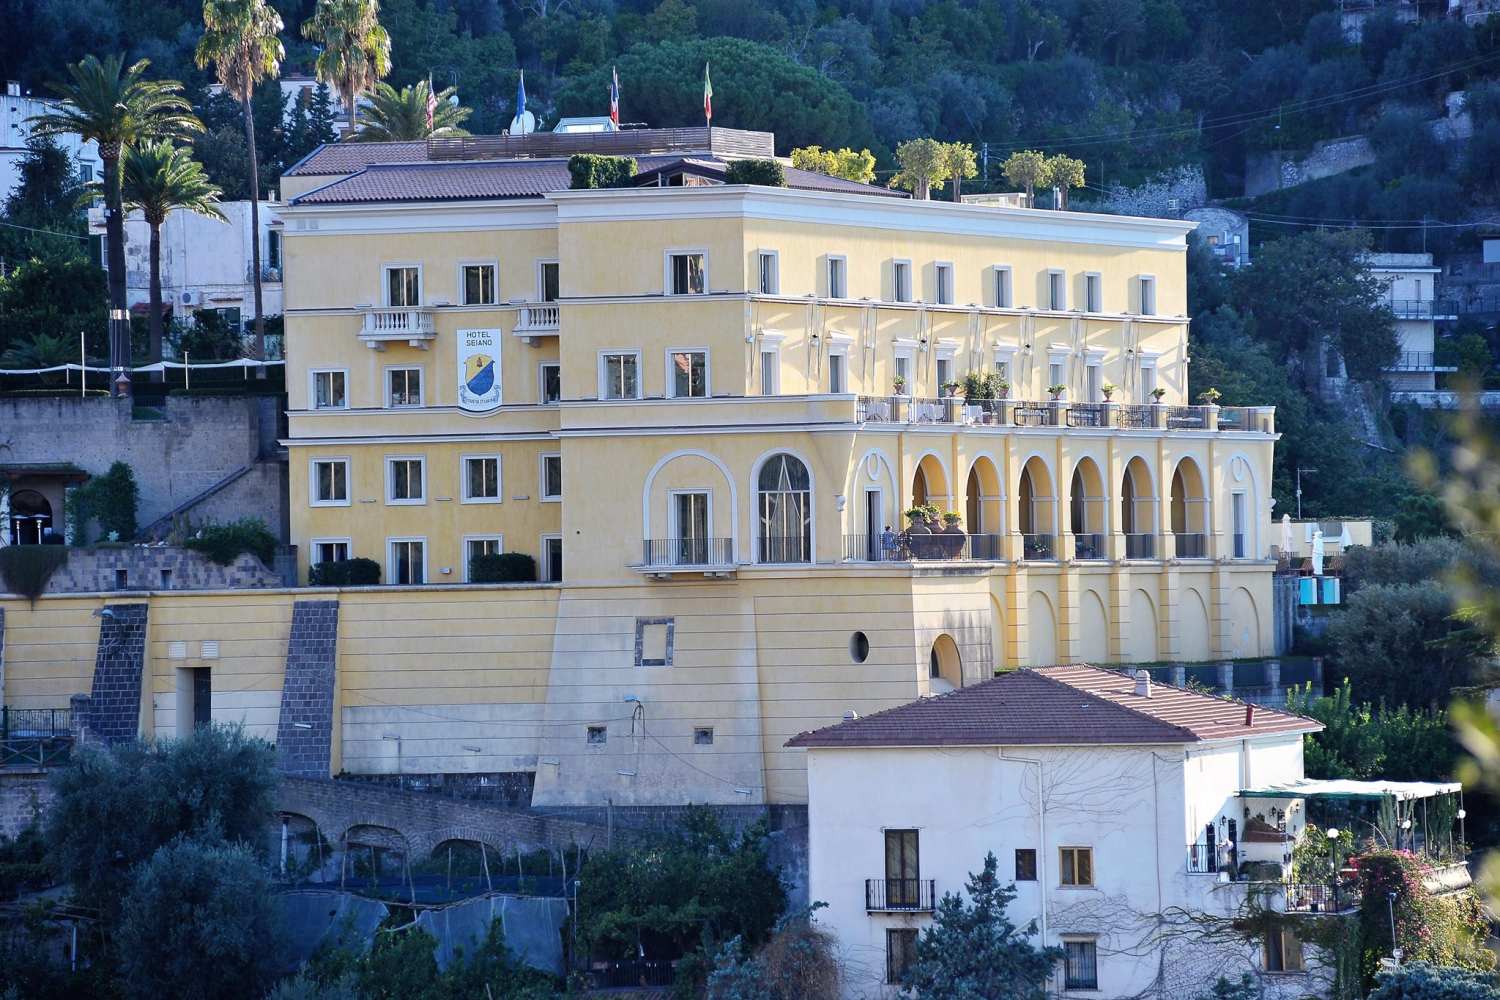 Grand Hotel Angiolieri Vico Equense, Campania - Italy